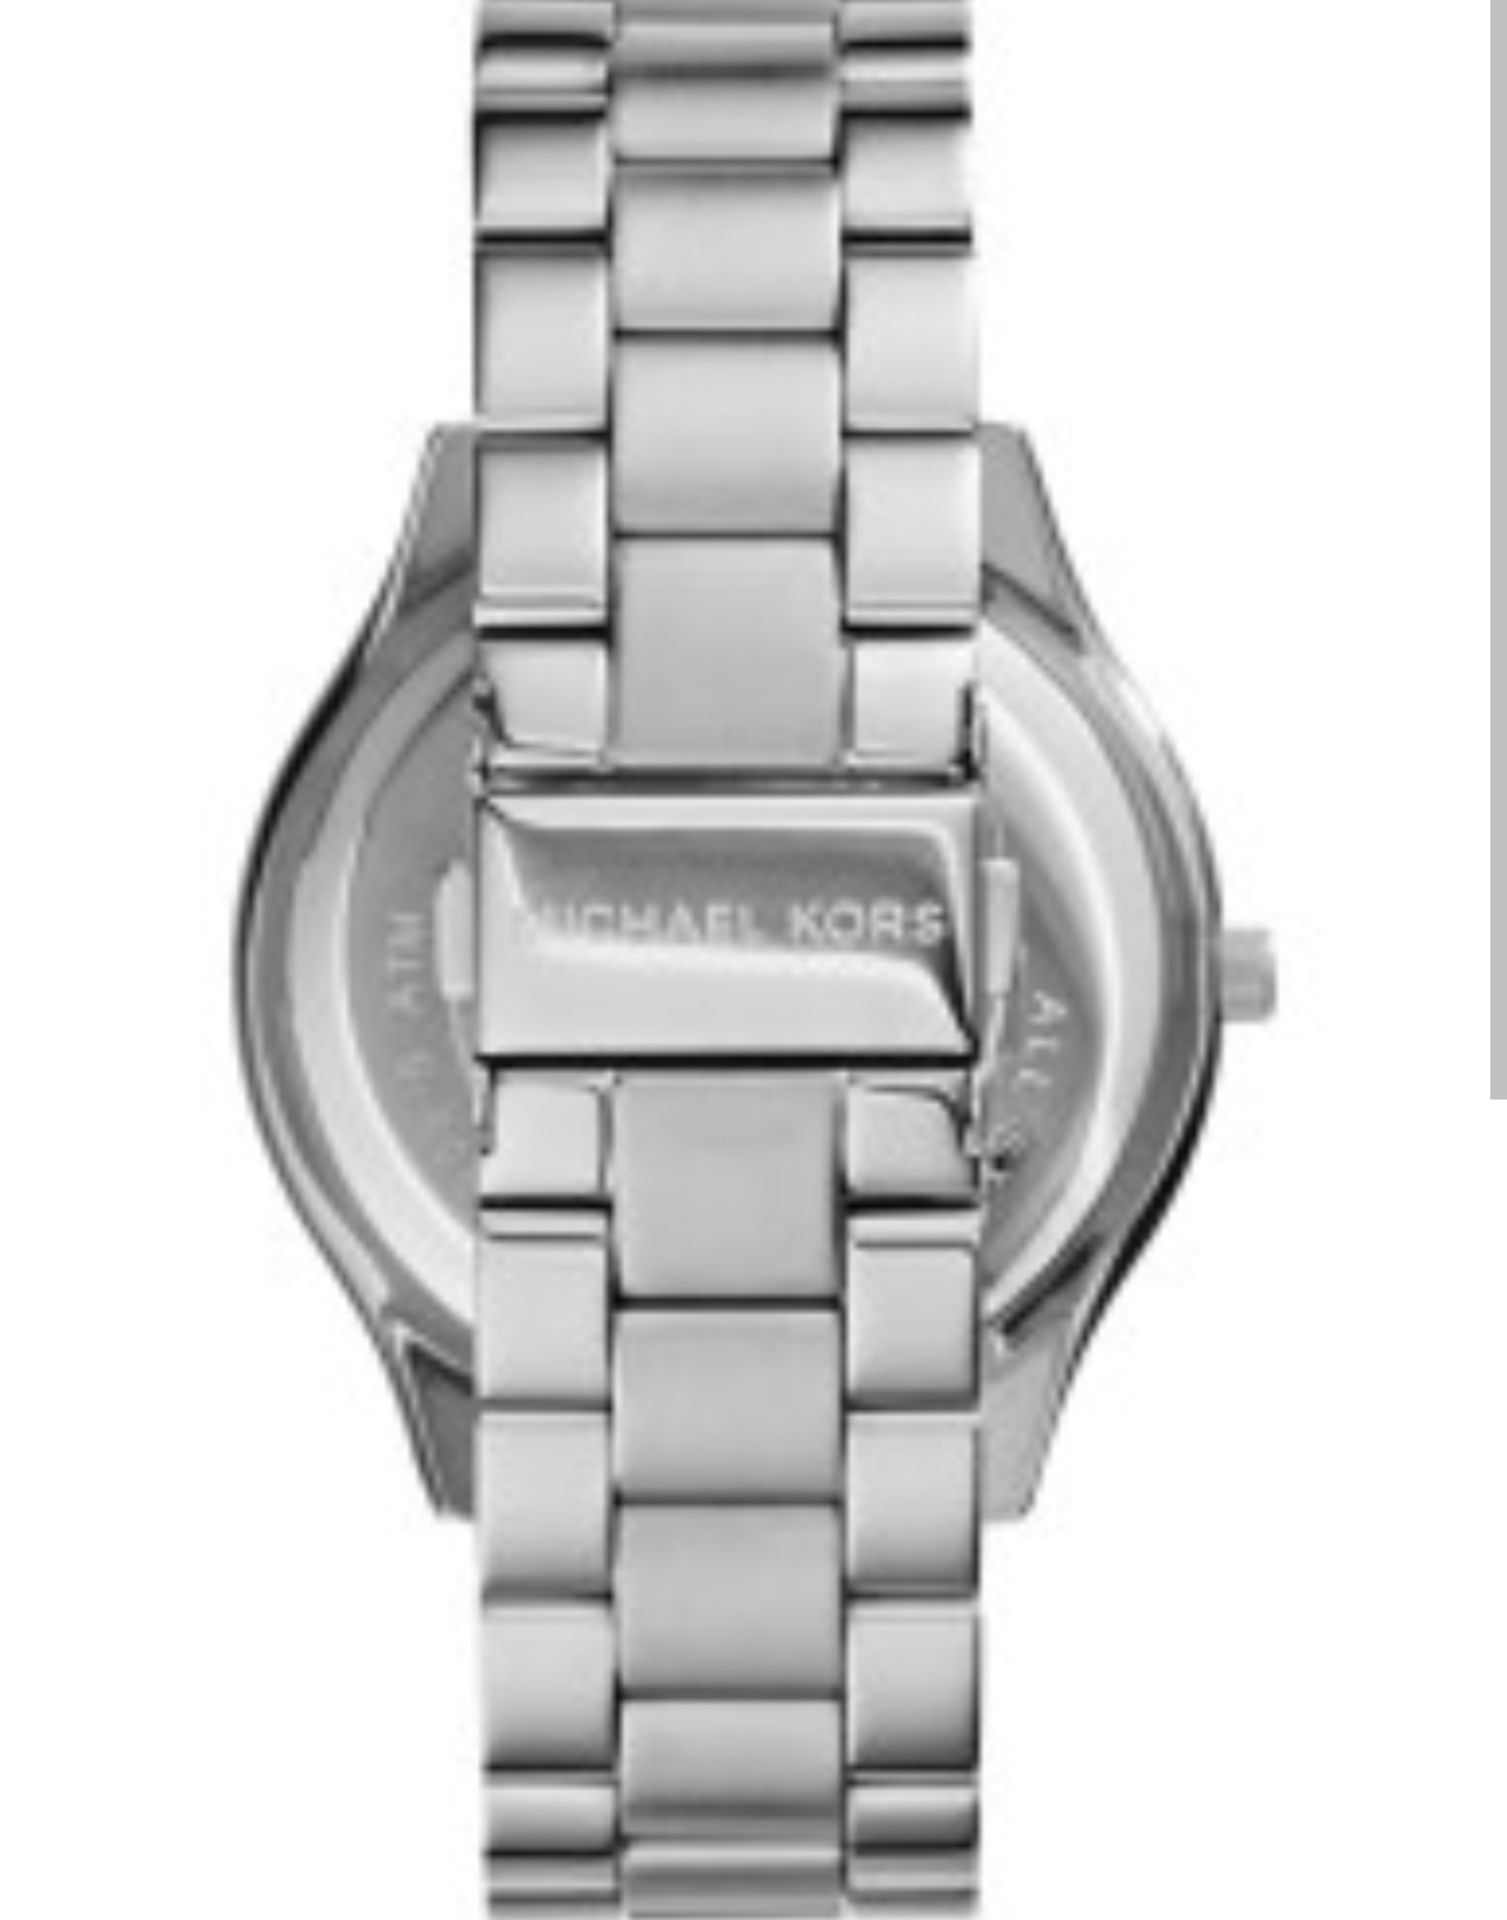 Michael Kors MK3178 Ladies Slim Runway Silver Bracelet Quartz Watch - Image 4 of 7